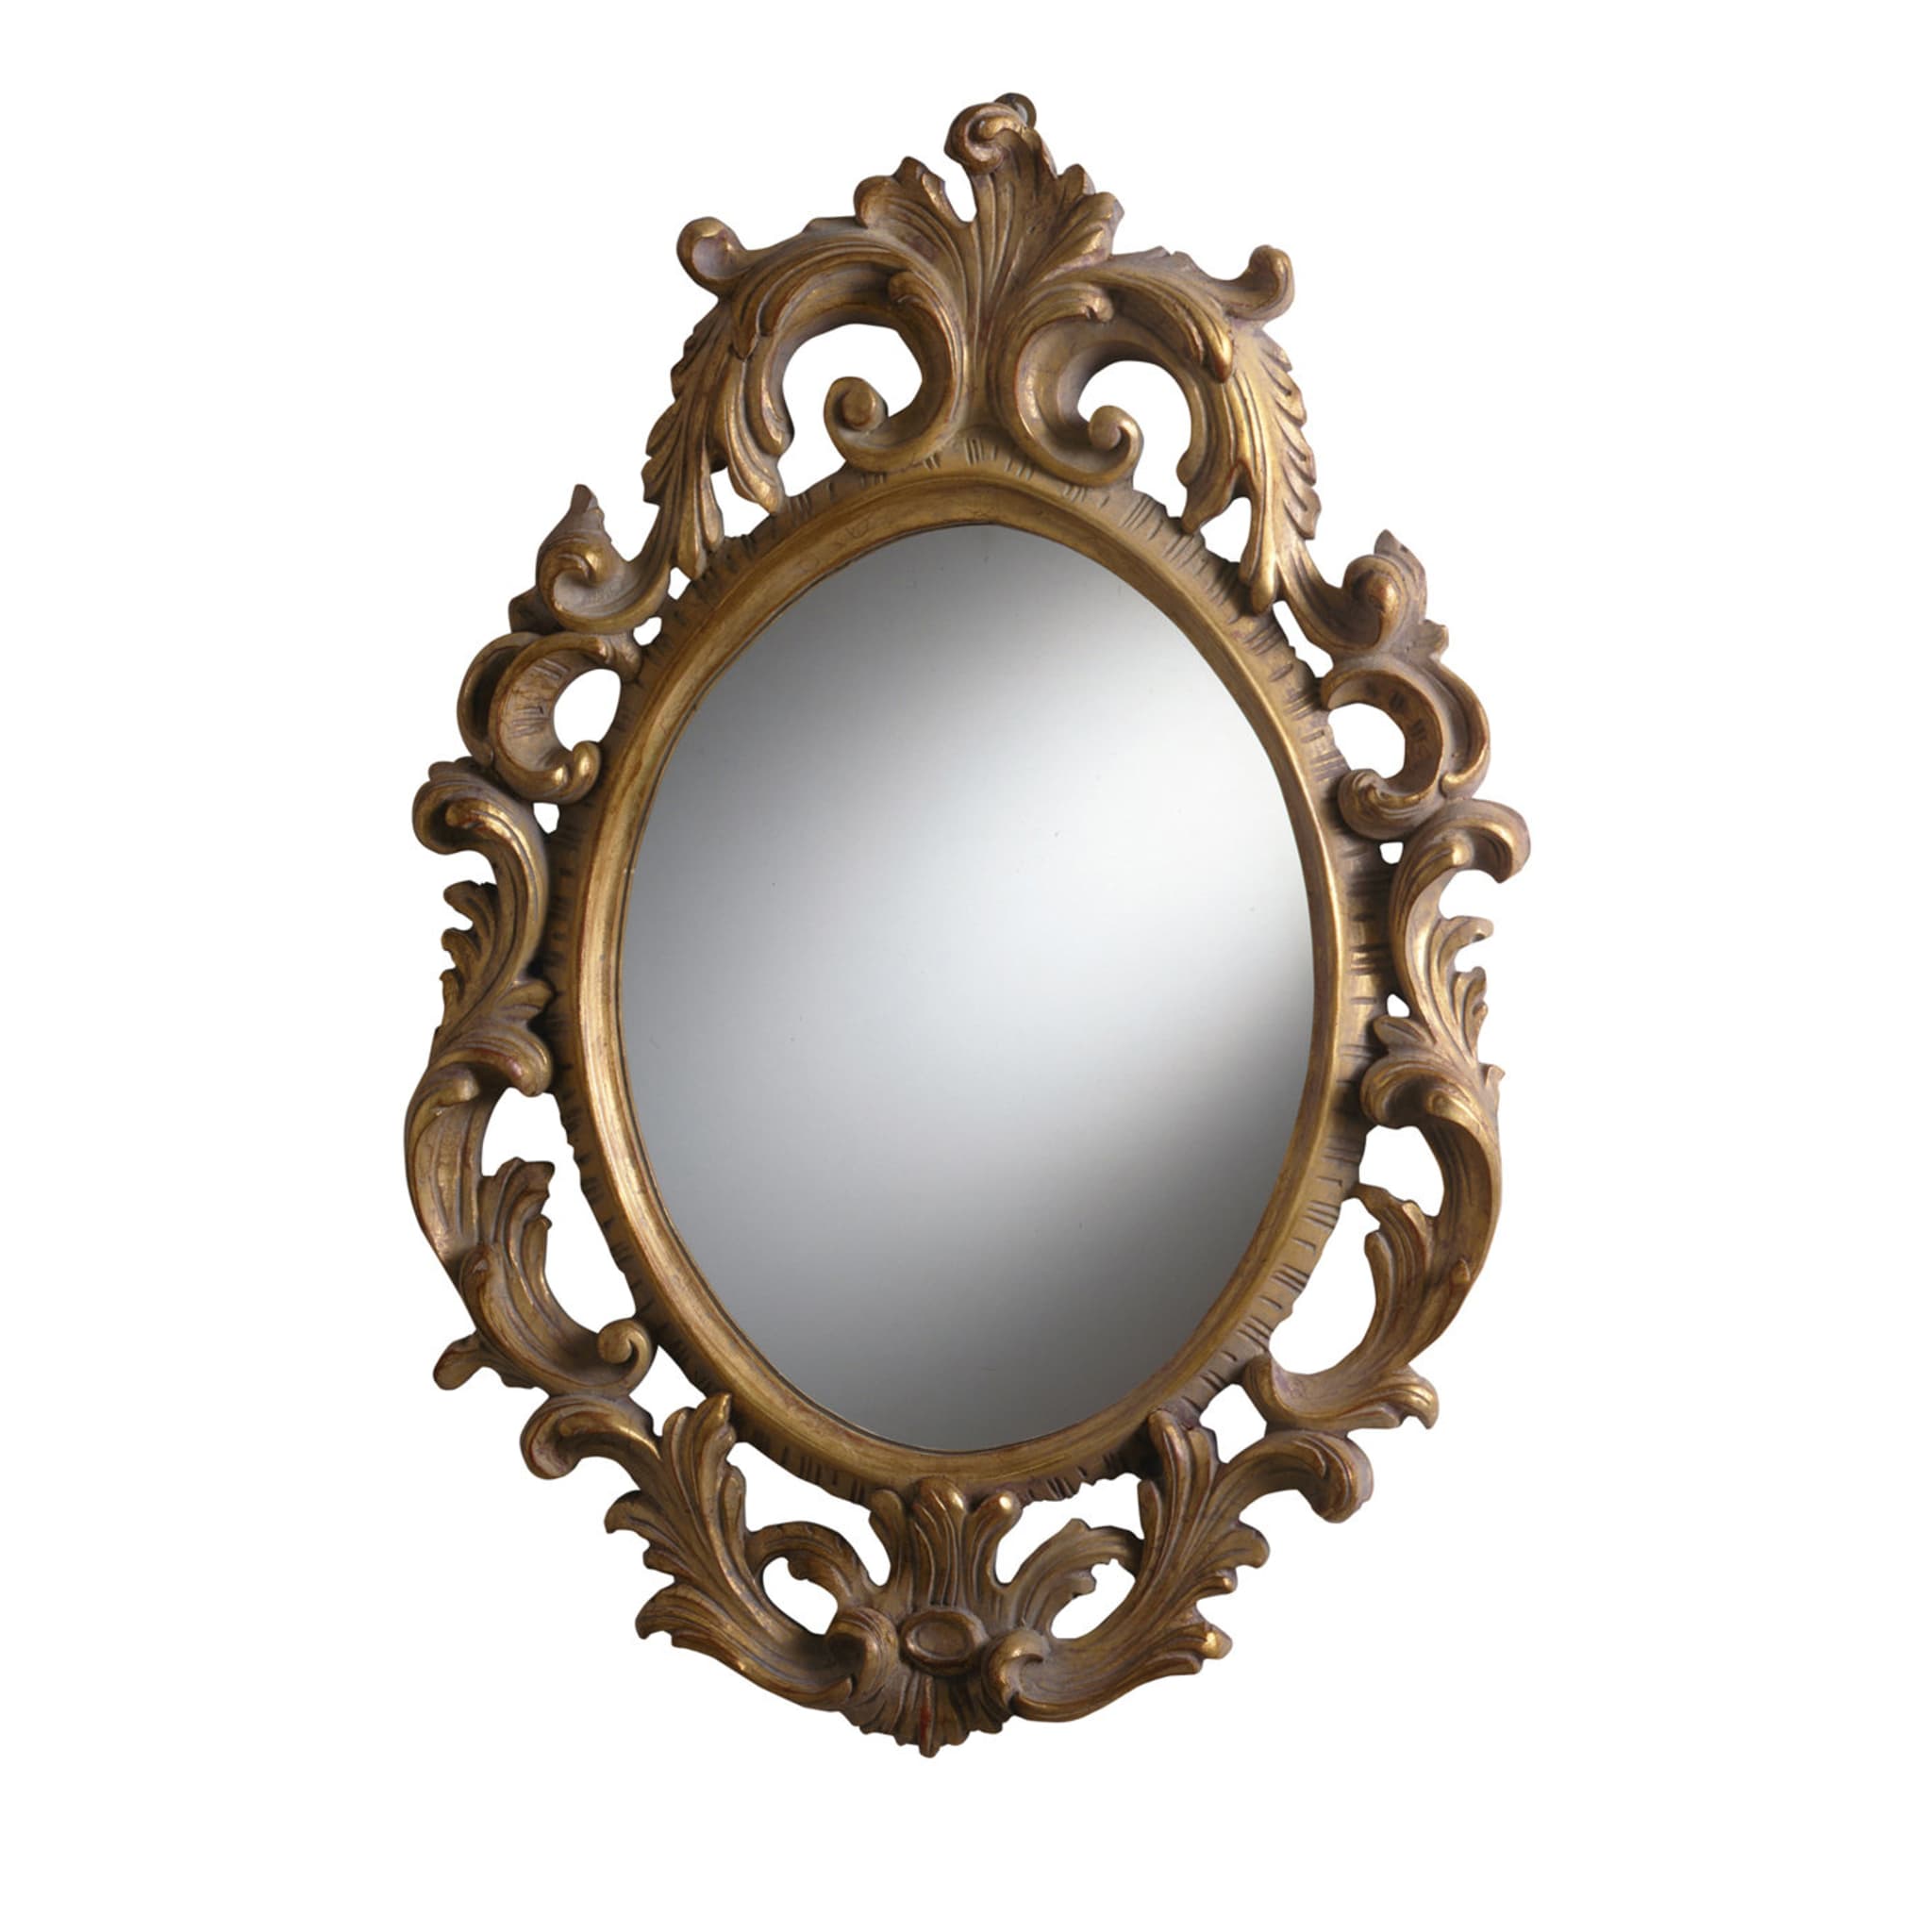 Specchio barocco #2 - Vista principale